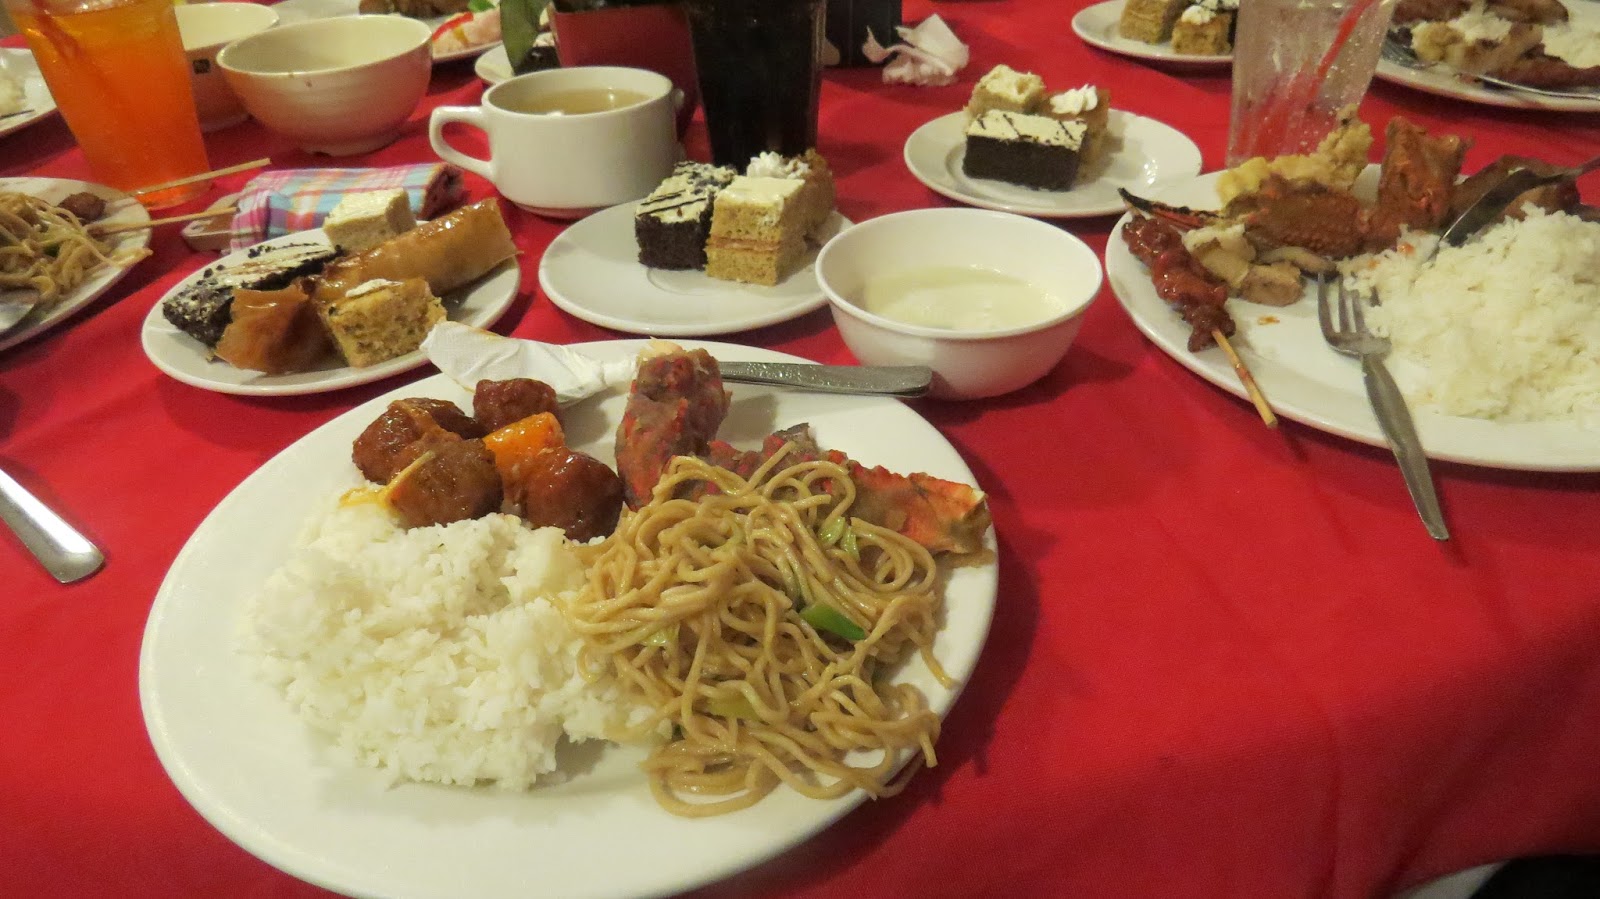 Cebu - Bohol Experience!: Dinner Time in Cebu!